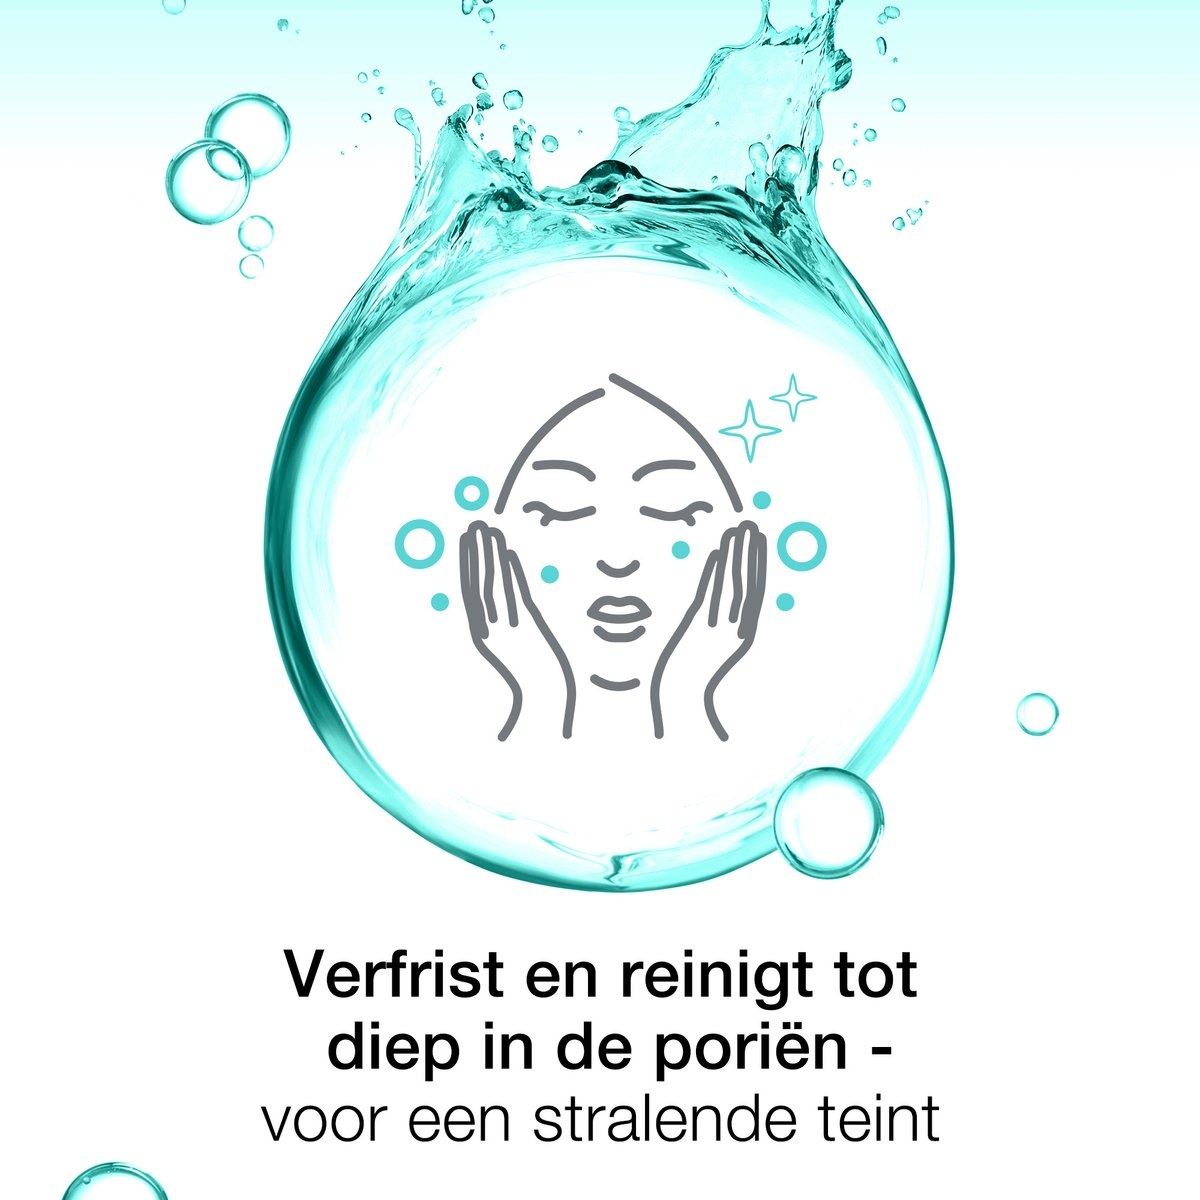 Neutrogena® Deep Clean 2in1 Reinigungs- und Gesichtsmaske, 150 ml